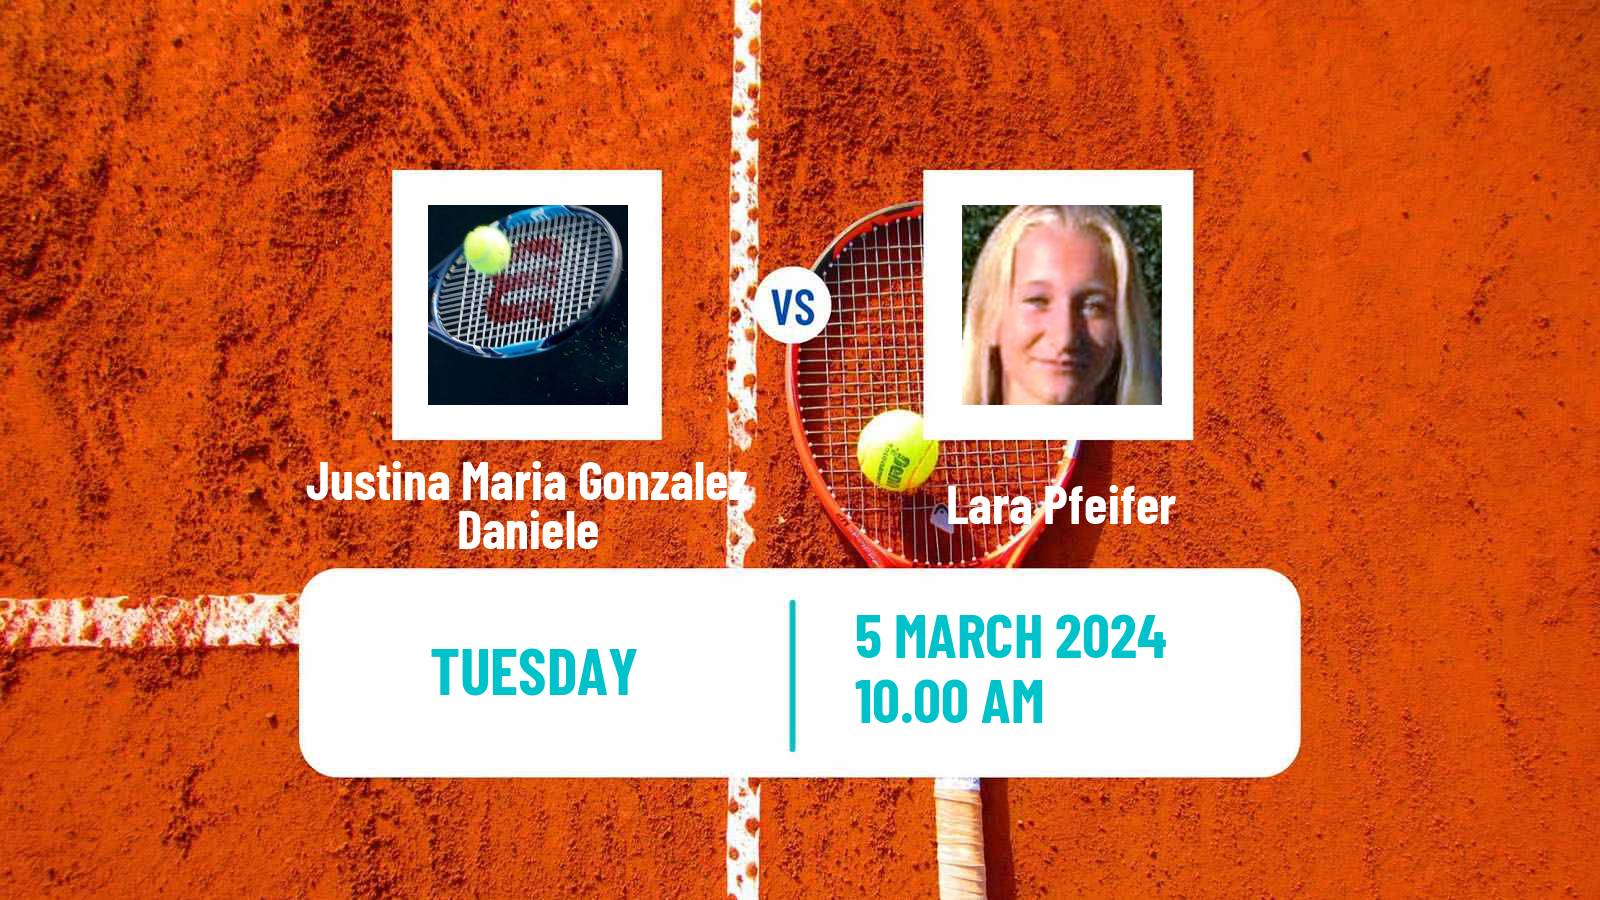 Tennis ITF W15 Cordoba Women Justina Maria Gonzalez Daniele - Lara Pfeifer